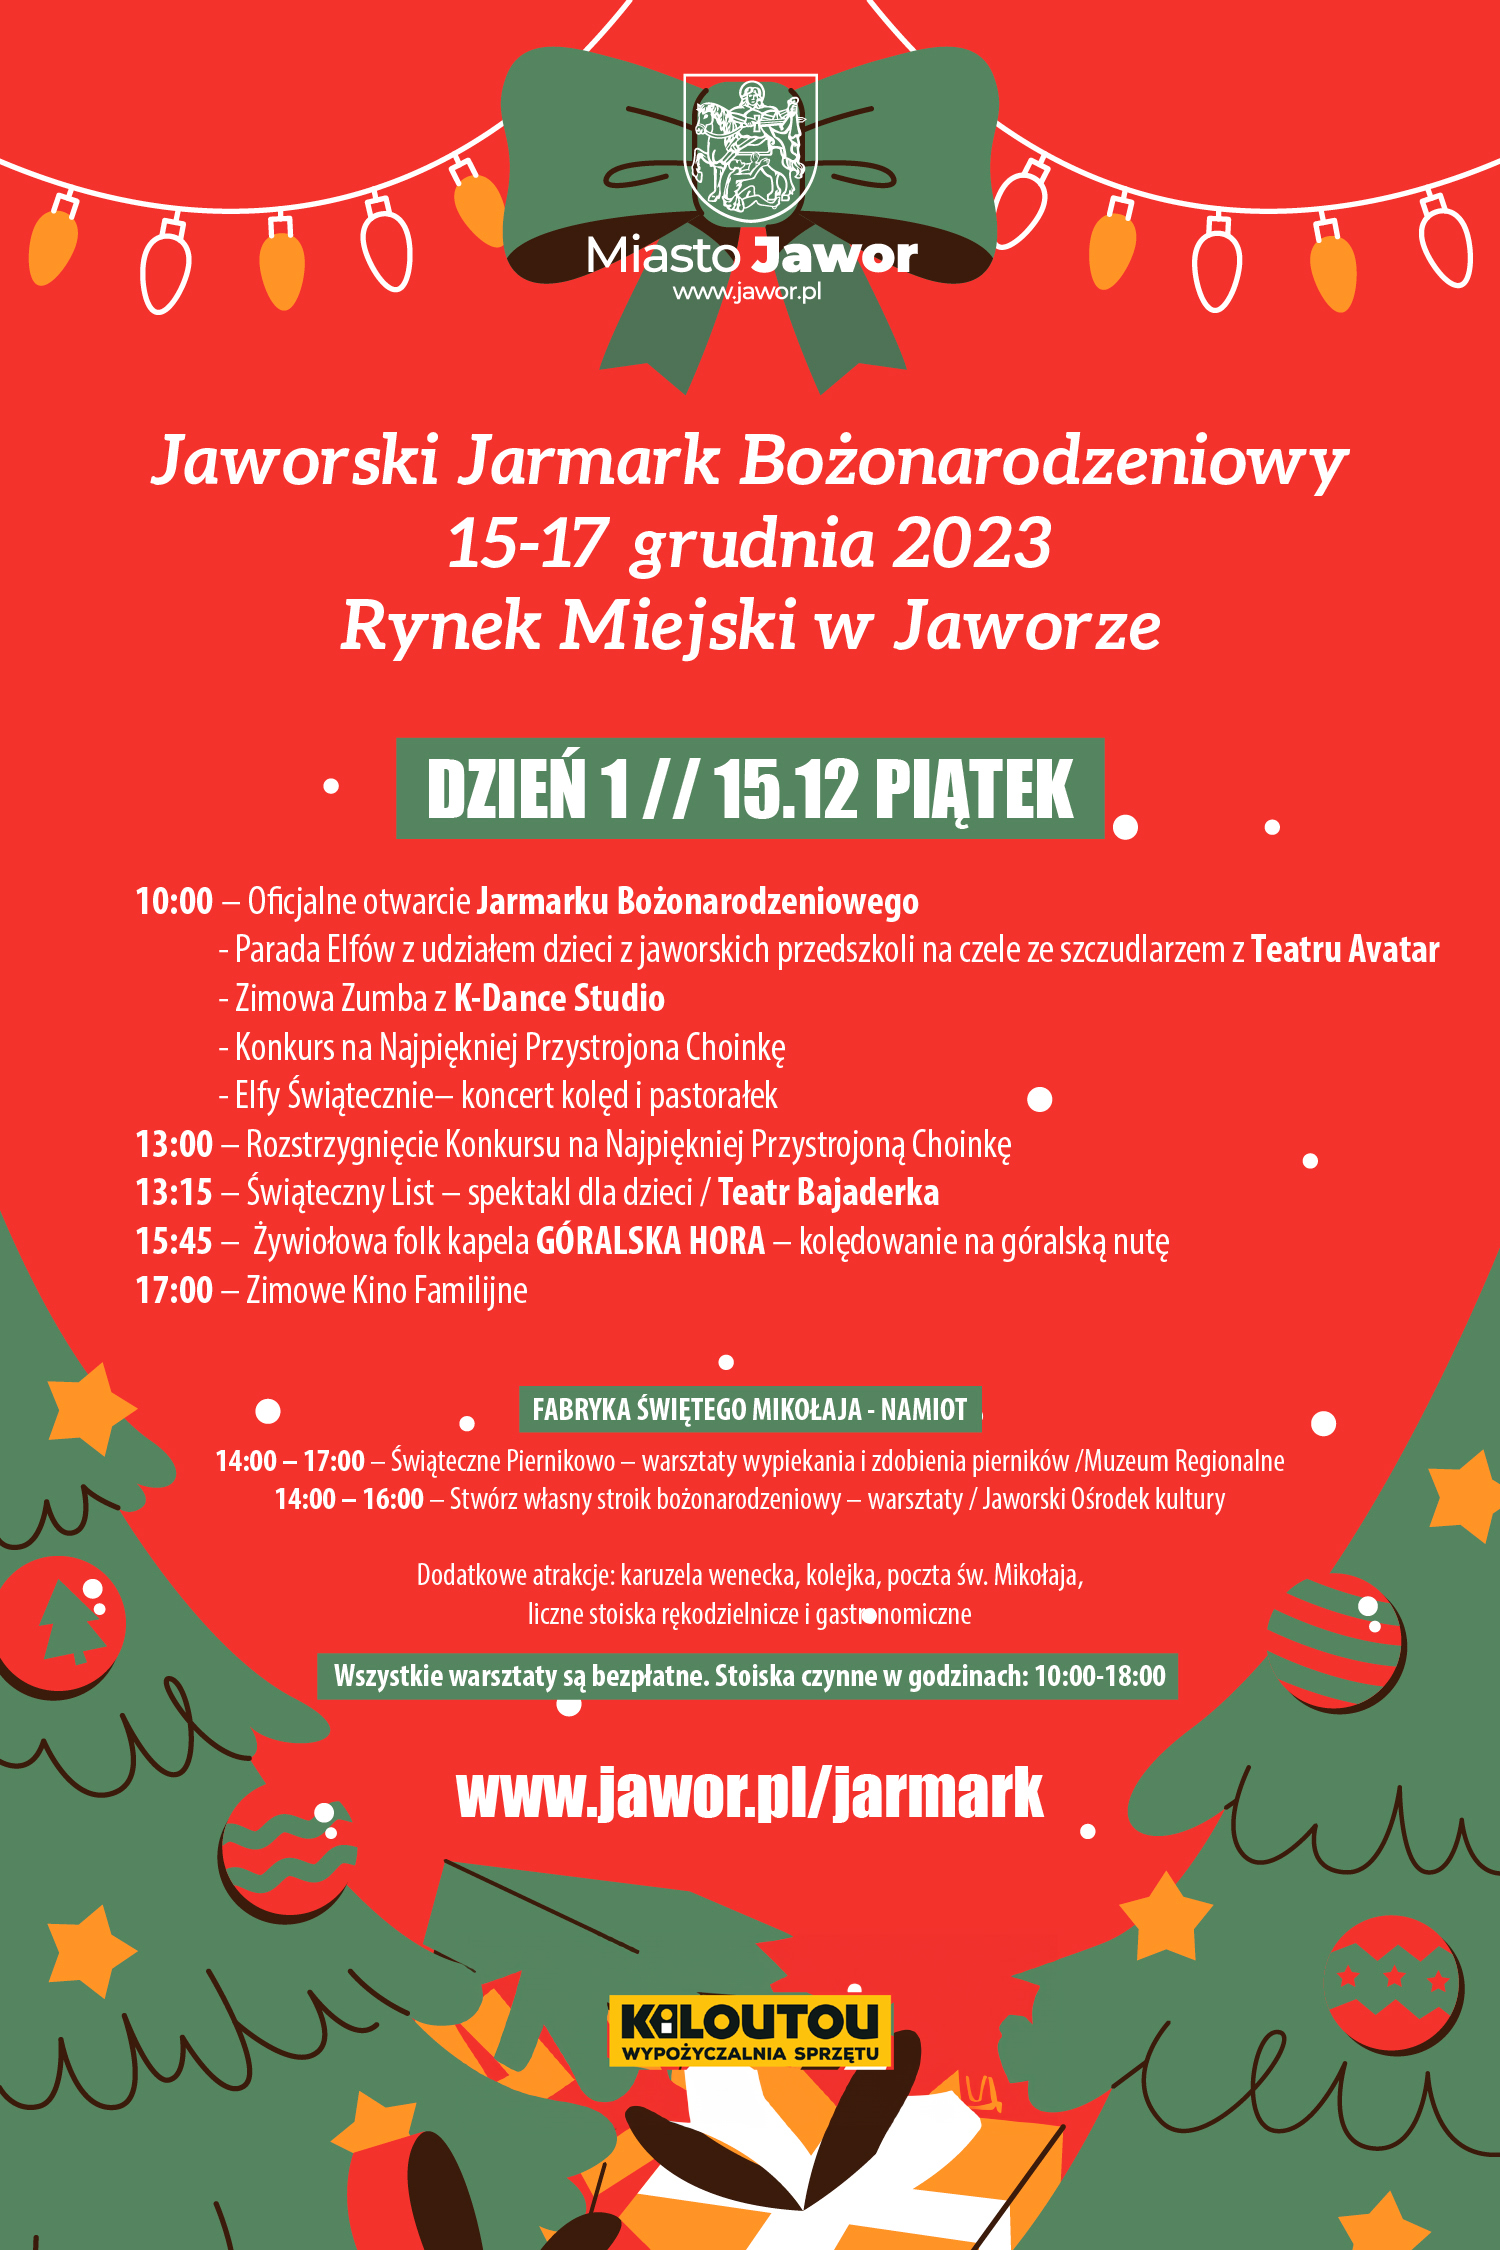 [PROGRAM]: Jaworski Jarmark Bożonarodzeniowy 15-17 grudnia 2023 r. // Miasto Jawor